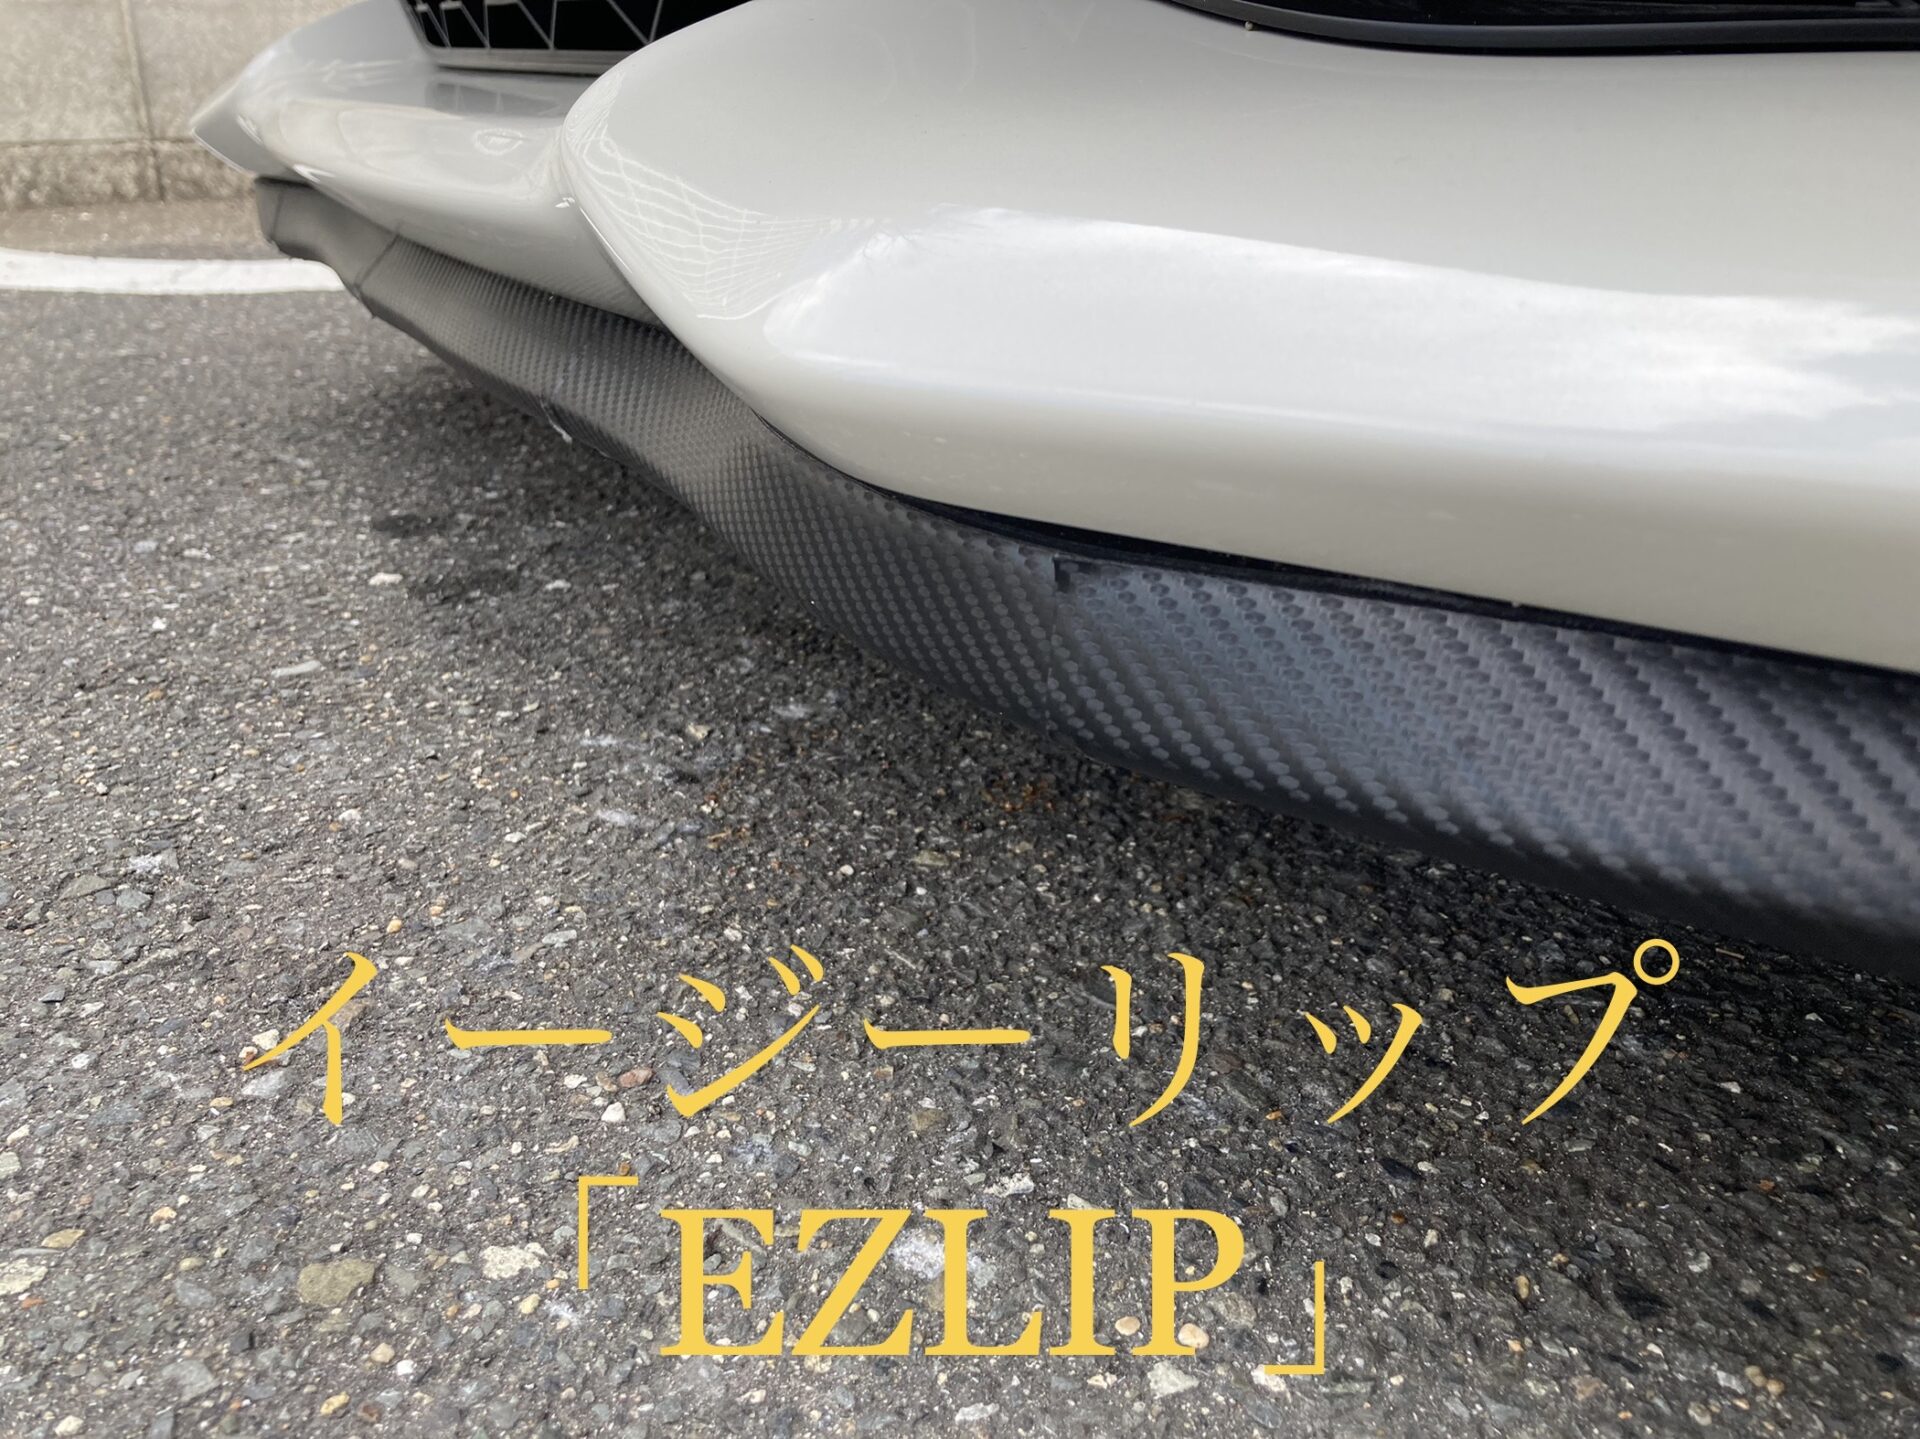 イージーリップ 車を傷から守る 車高低く見せるパーツ Ezlip 86carlife